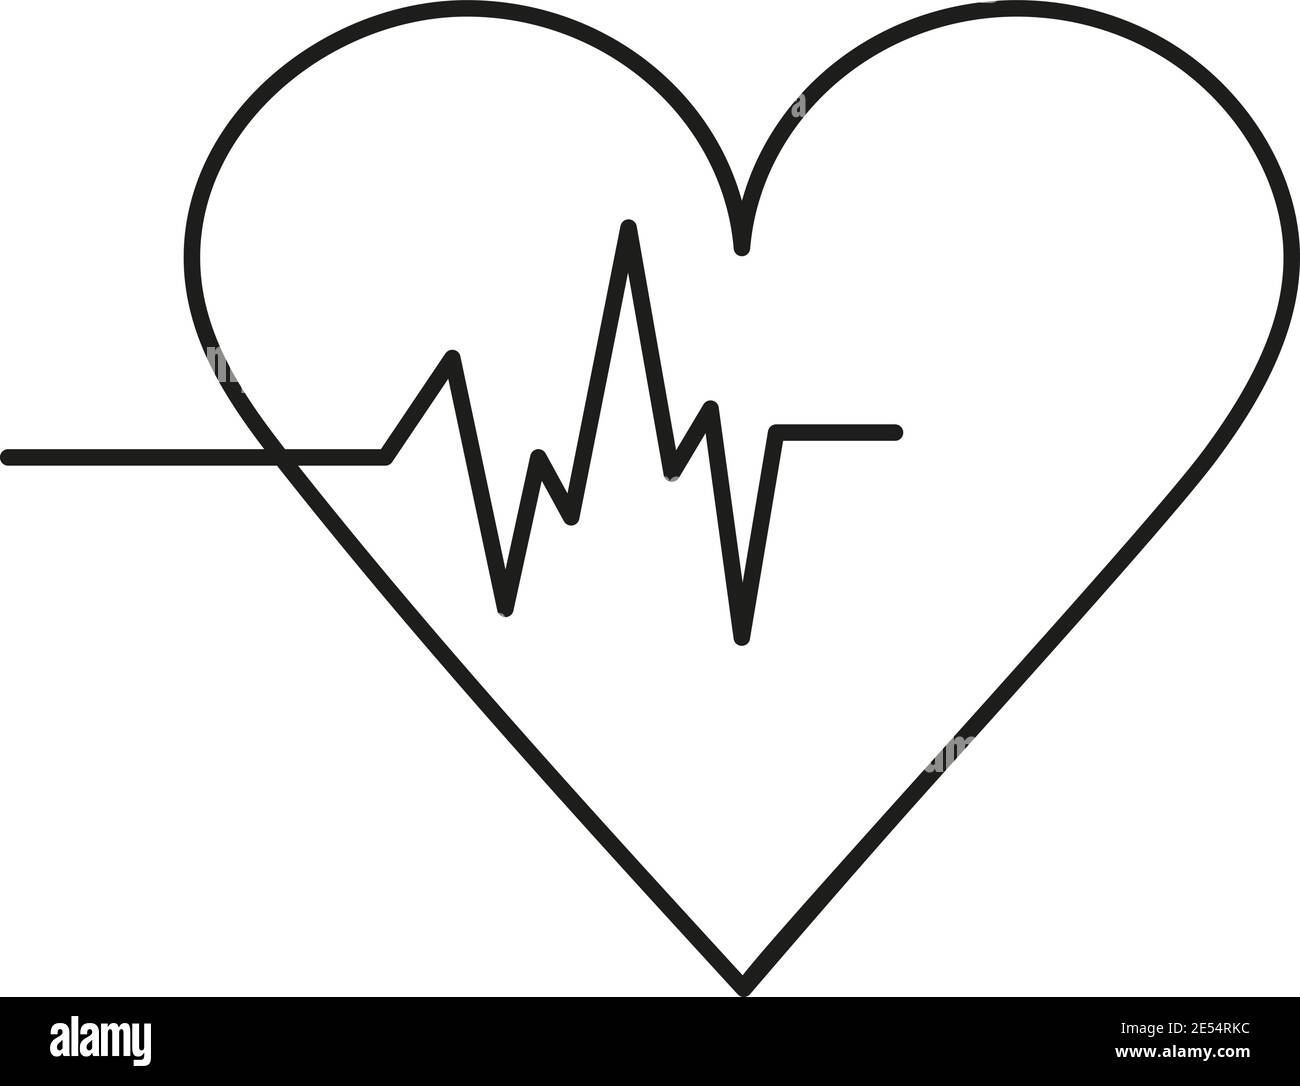 Medizin Herz einfaches Symbol. Bearbeitbares schwarzes Objekt auf weißem Hintergrund. Herzfrequenzvektor. Stock Vektor